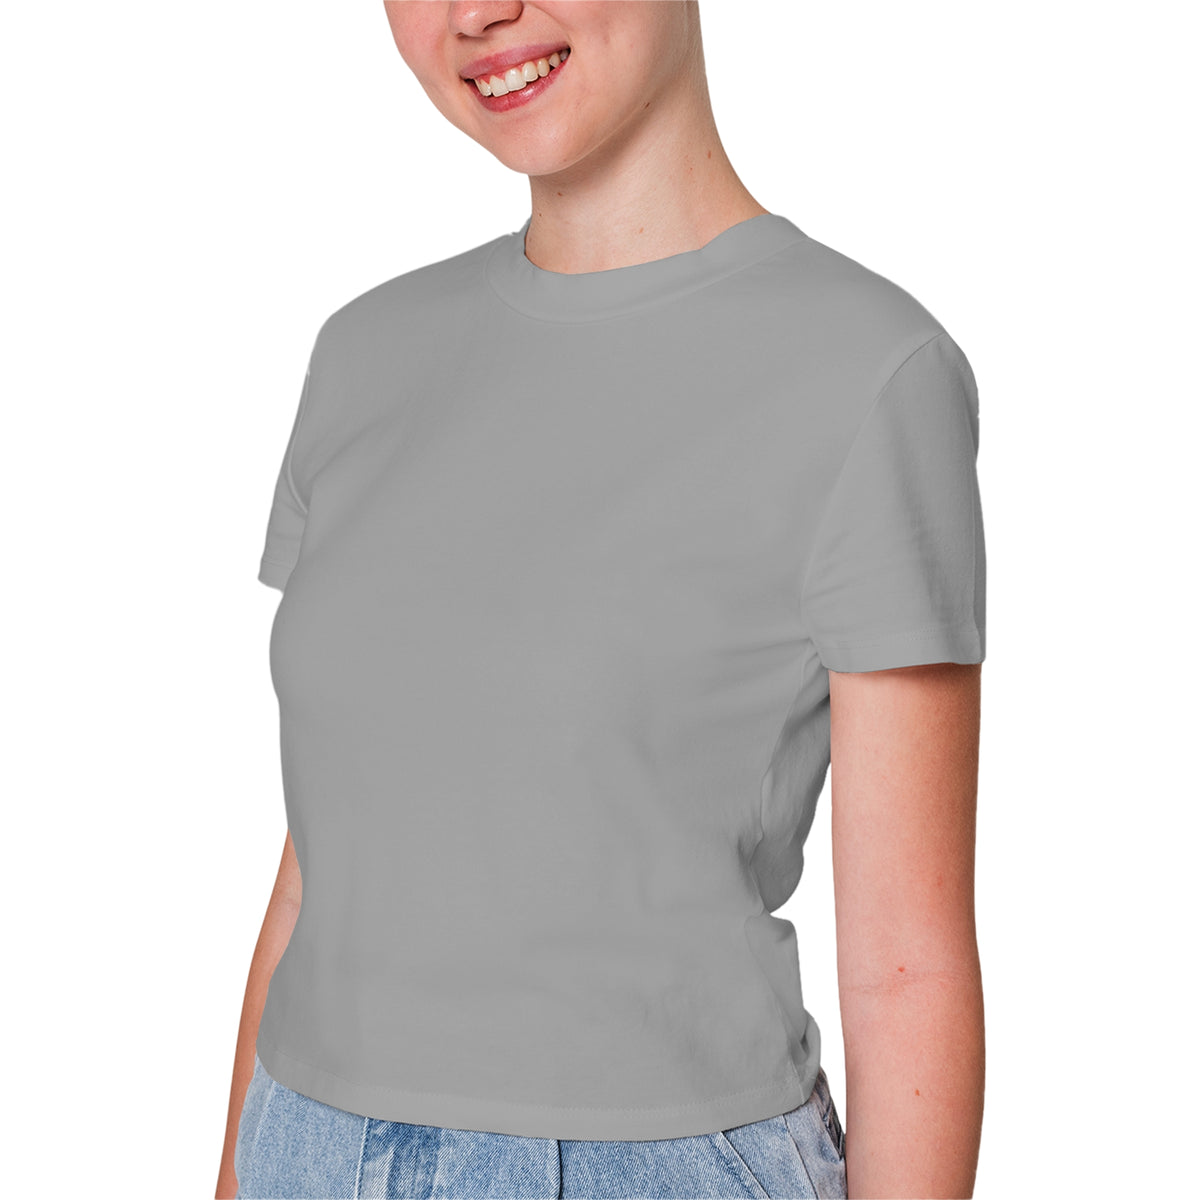 Grey T-Shirt For Women